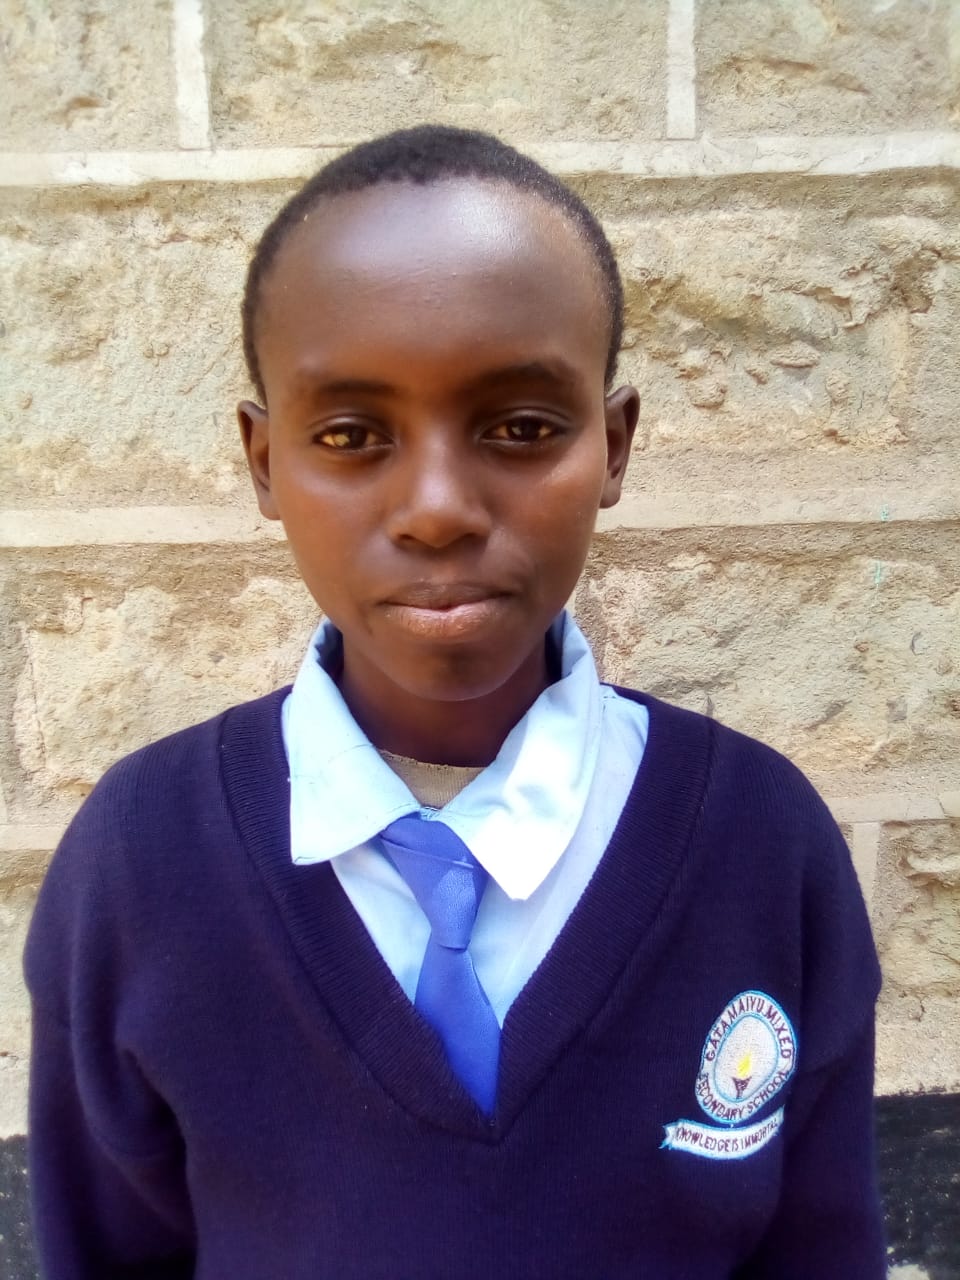 Pate gesucht für Jungen in Kenia: Francis Mwangi